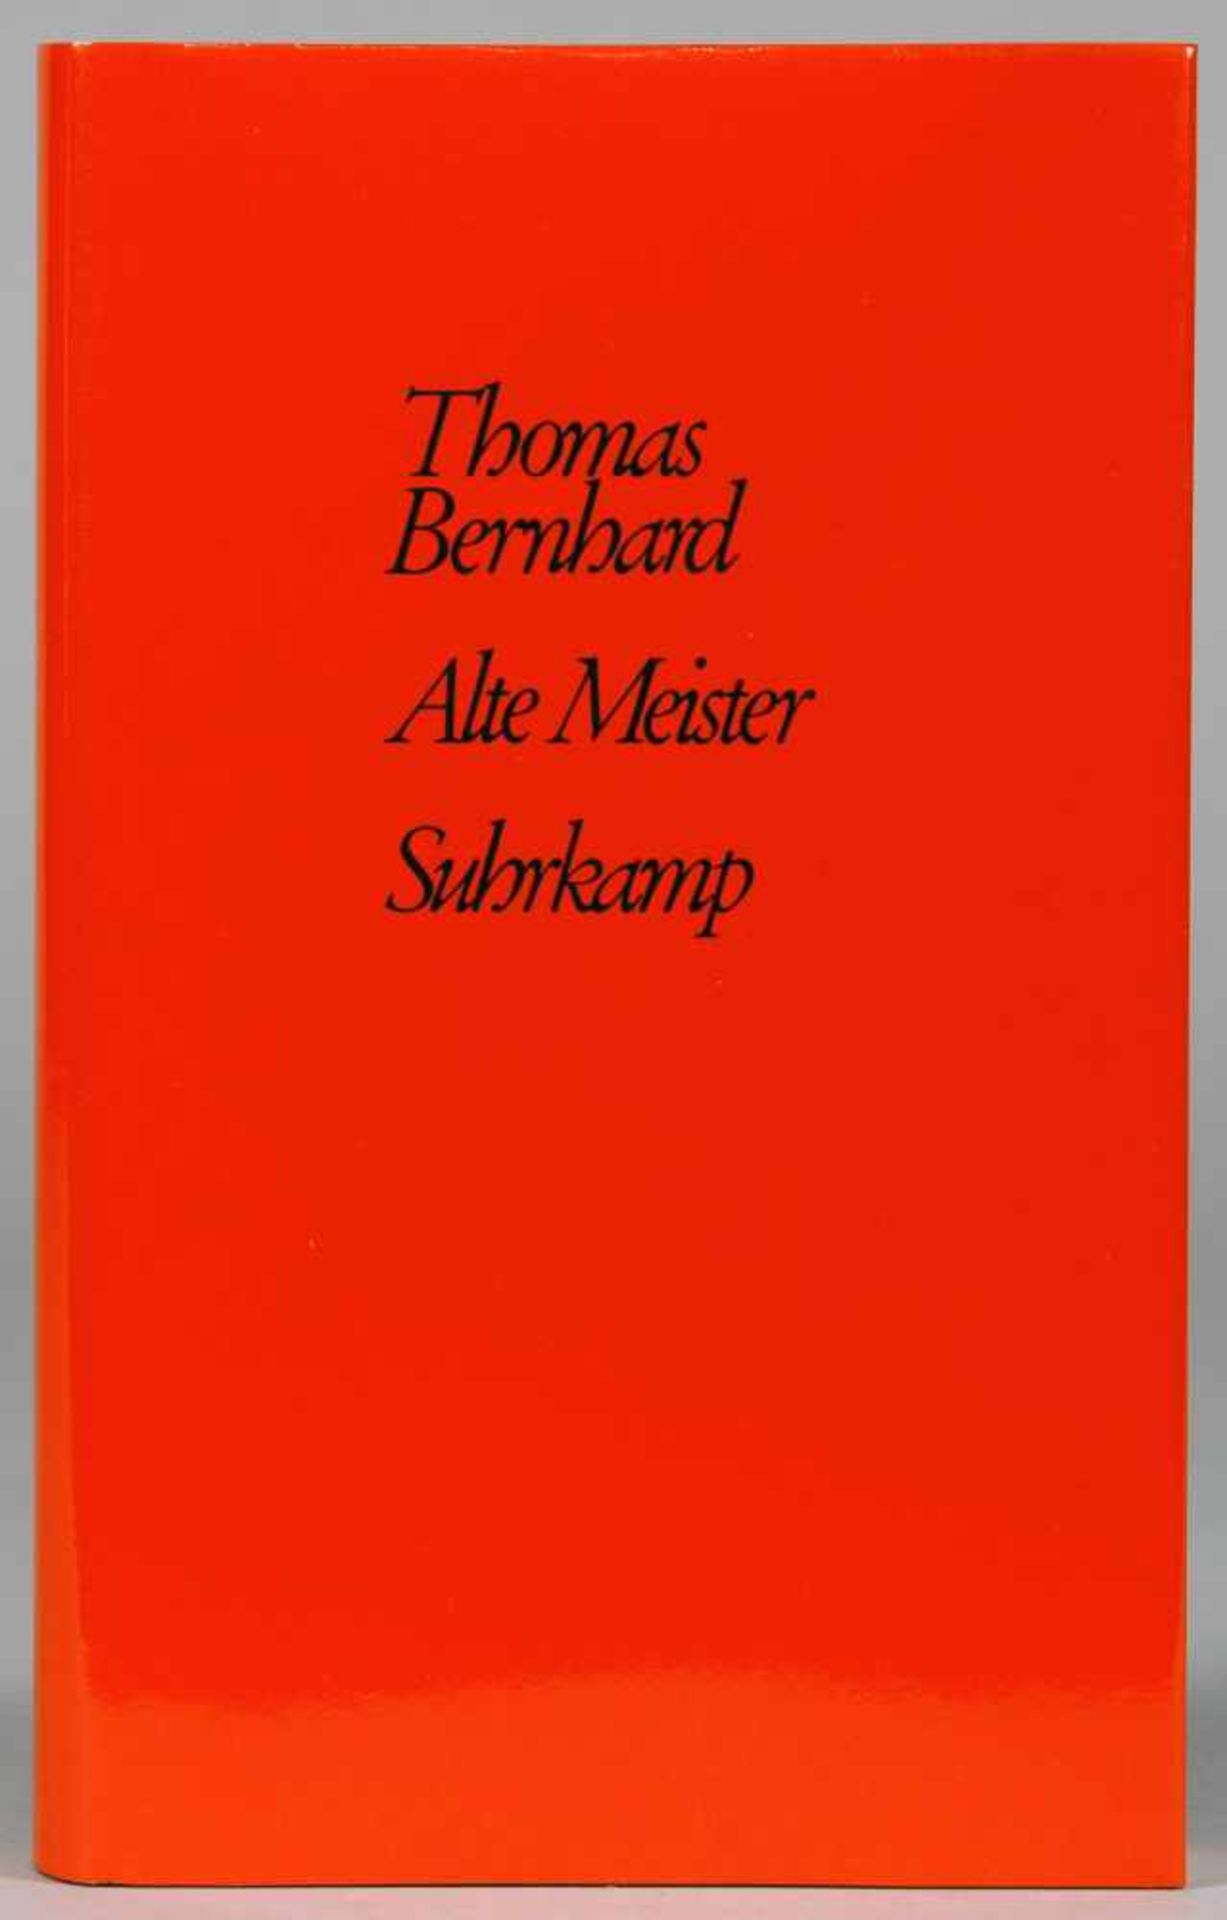 Thomas Bernhard. Alte Meister. Komödie. Frankfurt am Main, Suhrkamp 1985. Originalleinenband mit -